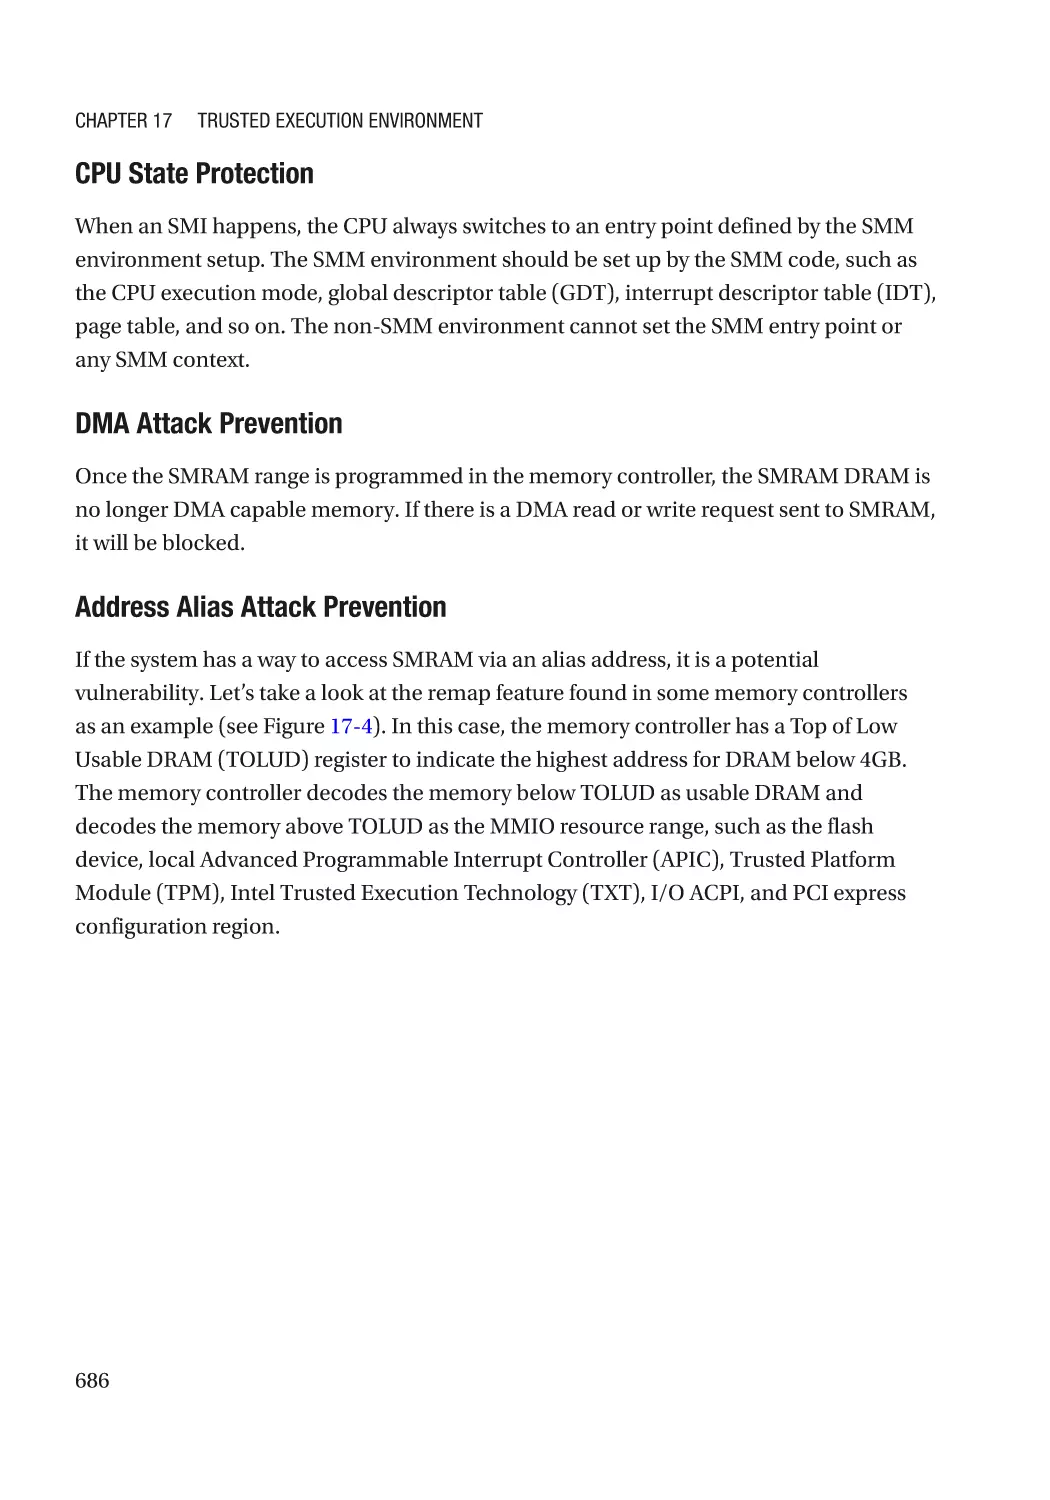 CPU State Protection
DMA Attack Prevention
Address Alias Attack Prevention